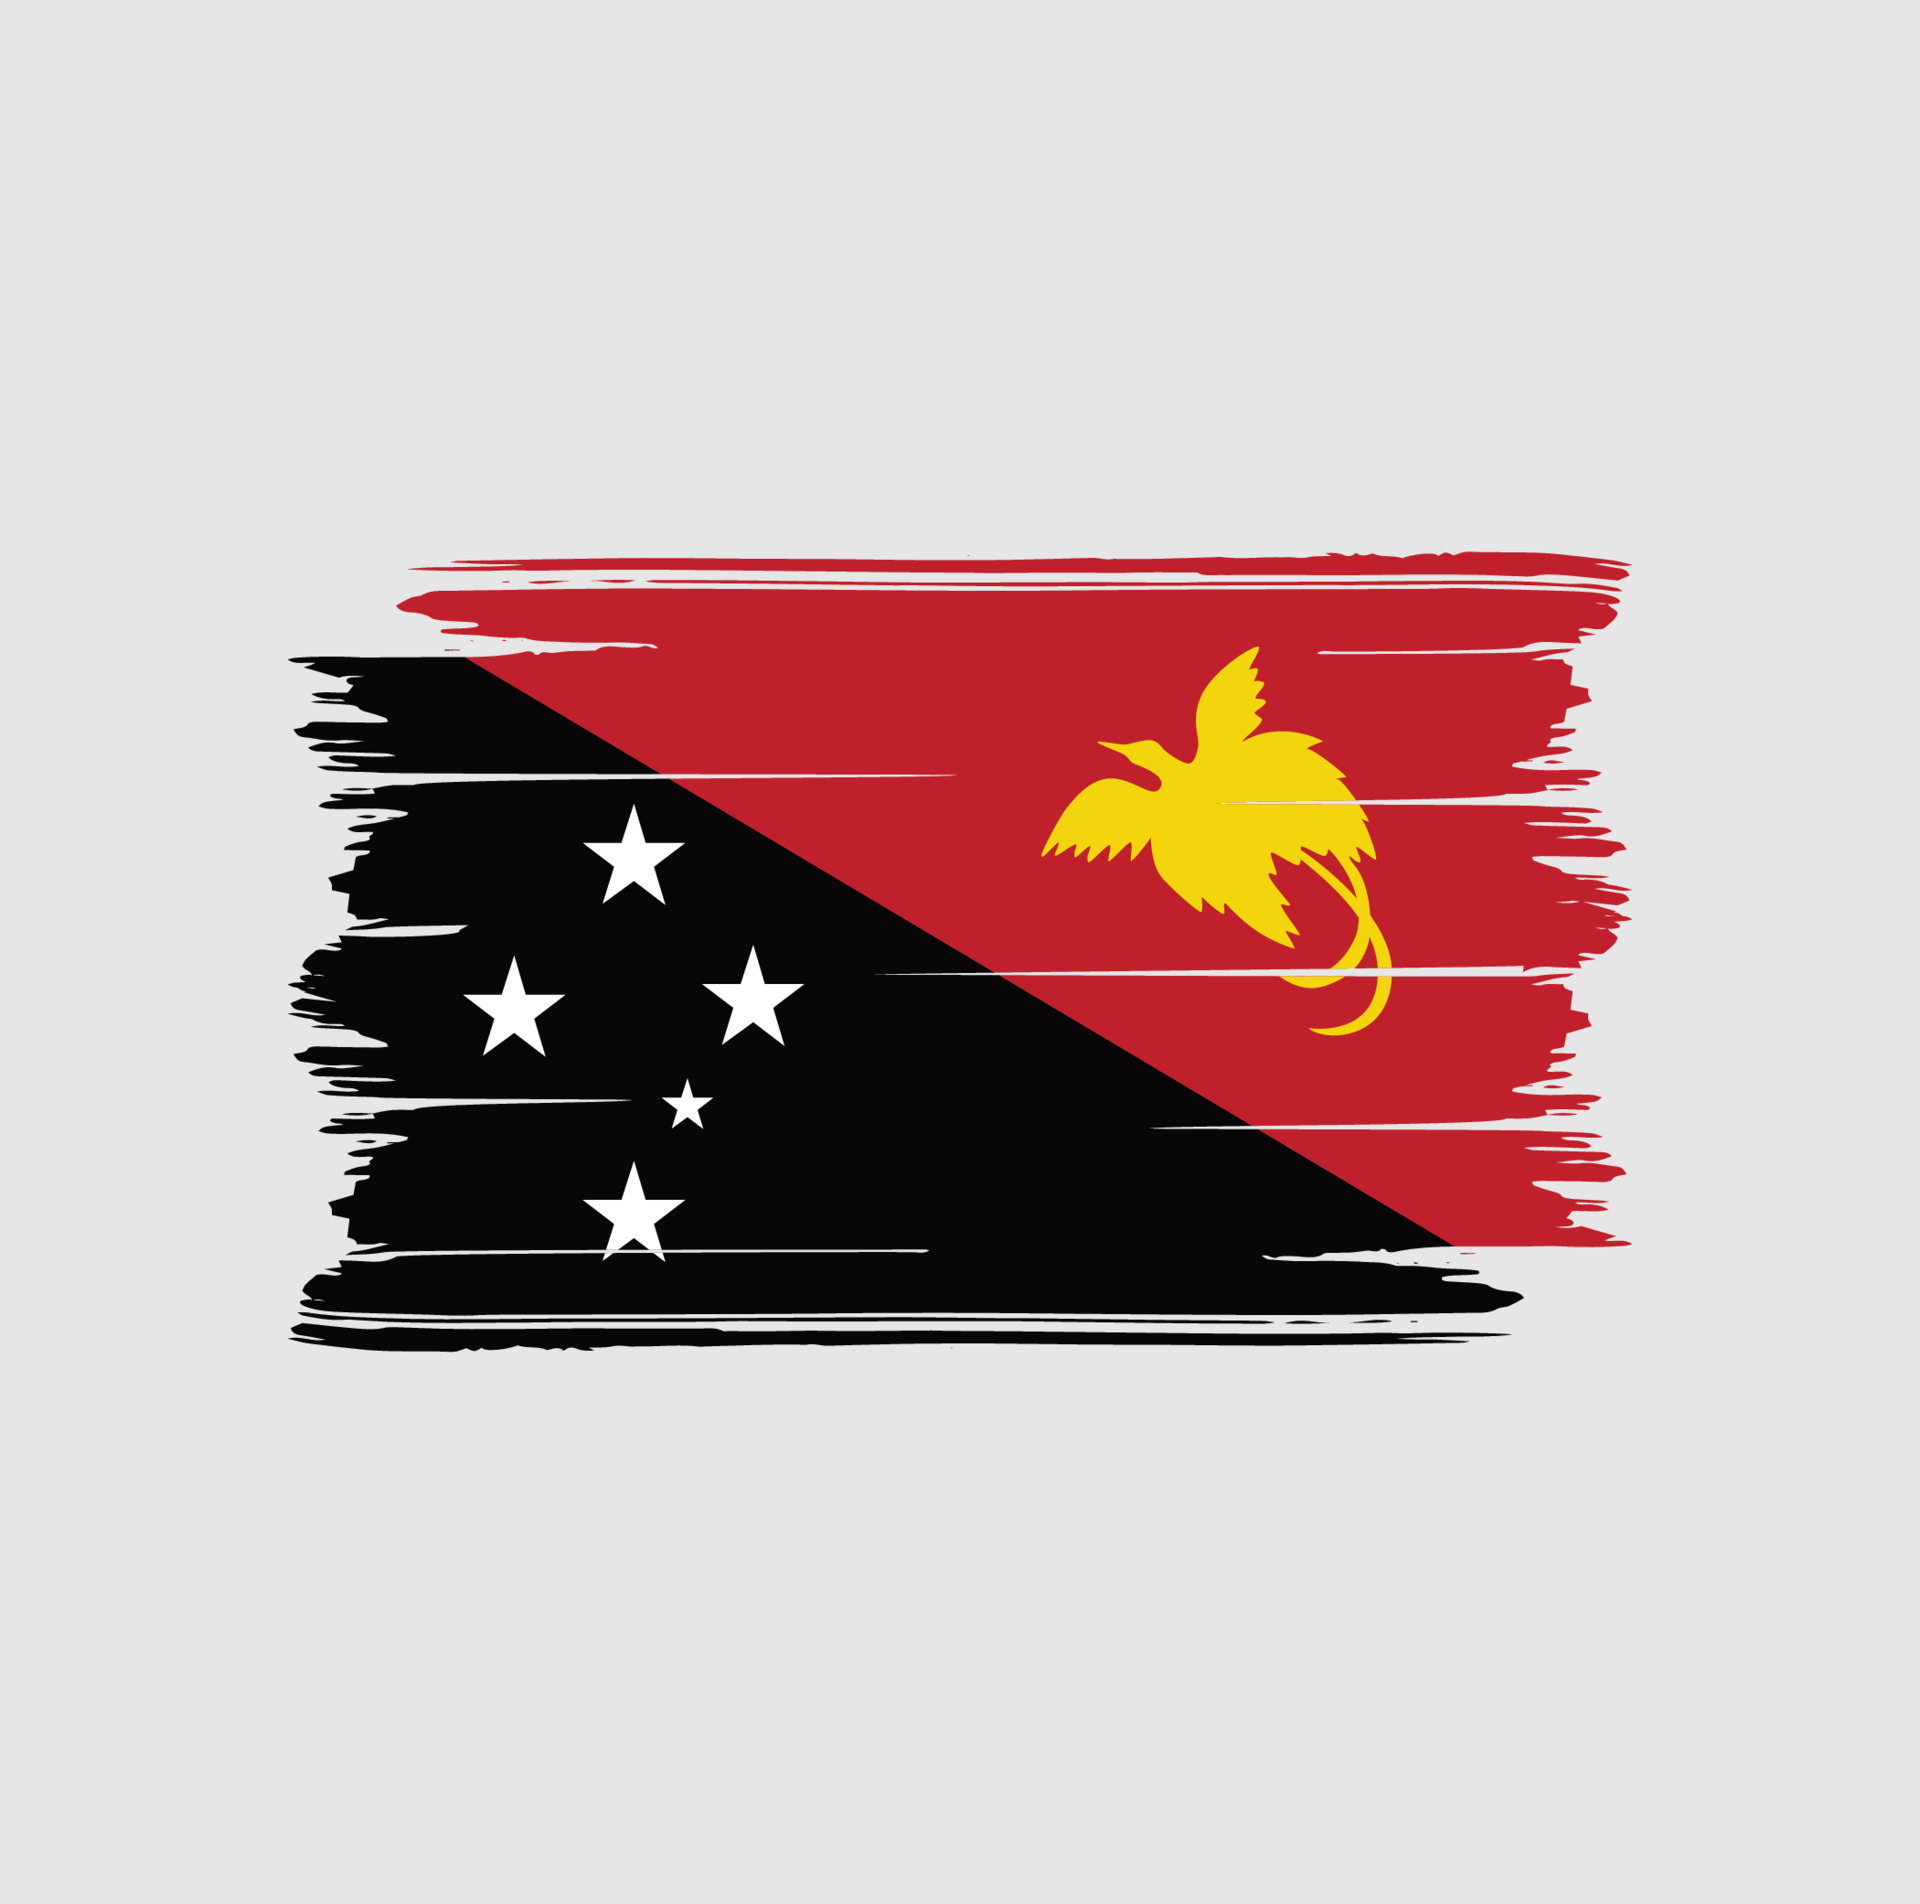 Papua New guinea Flag Brush. National Flag 7156779 Vector Art at Vecteezy